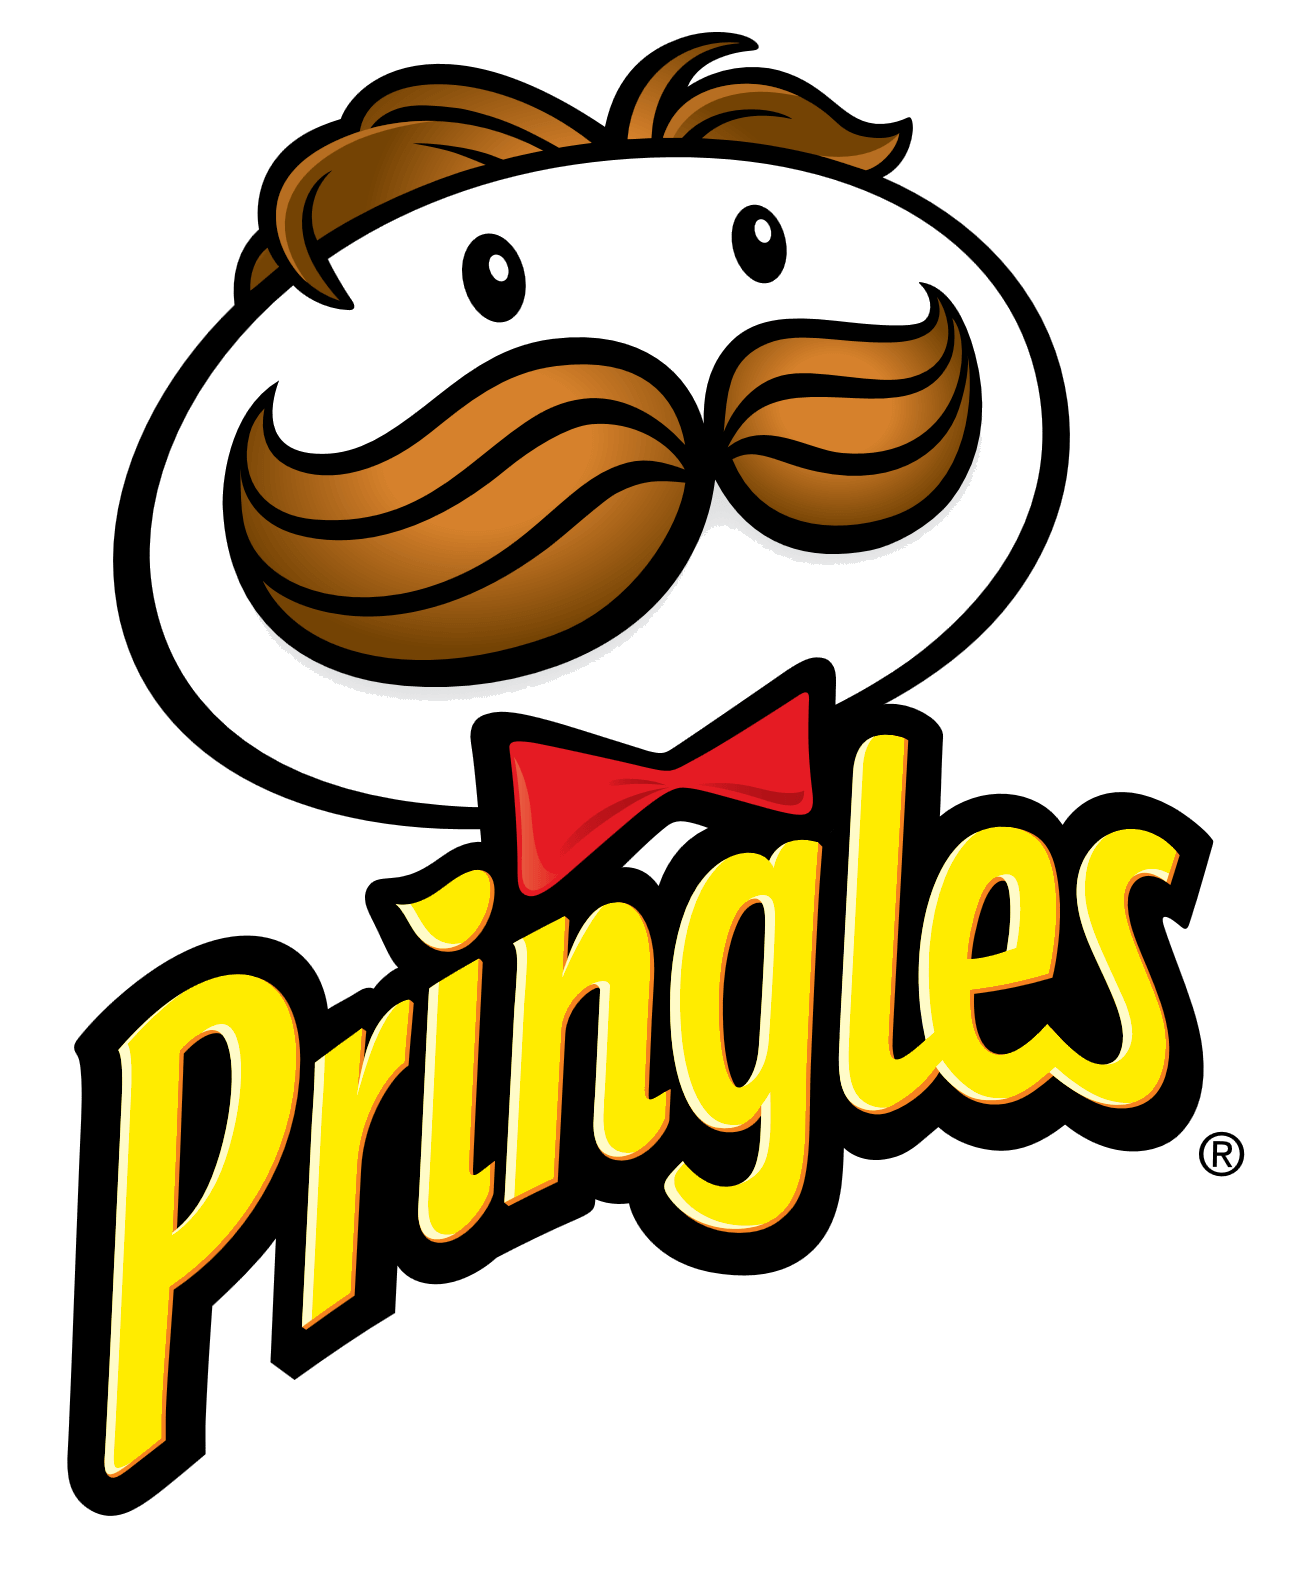 Pringles logo, logotype